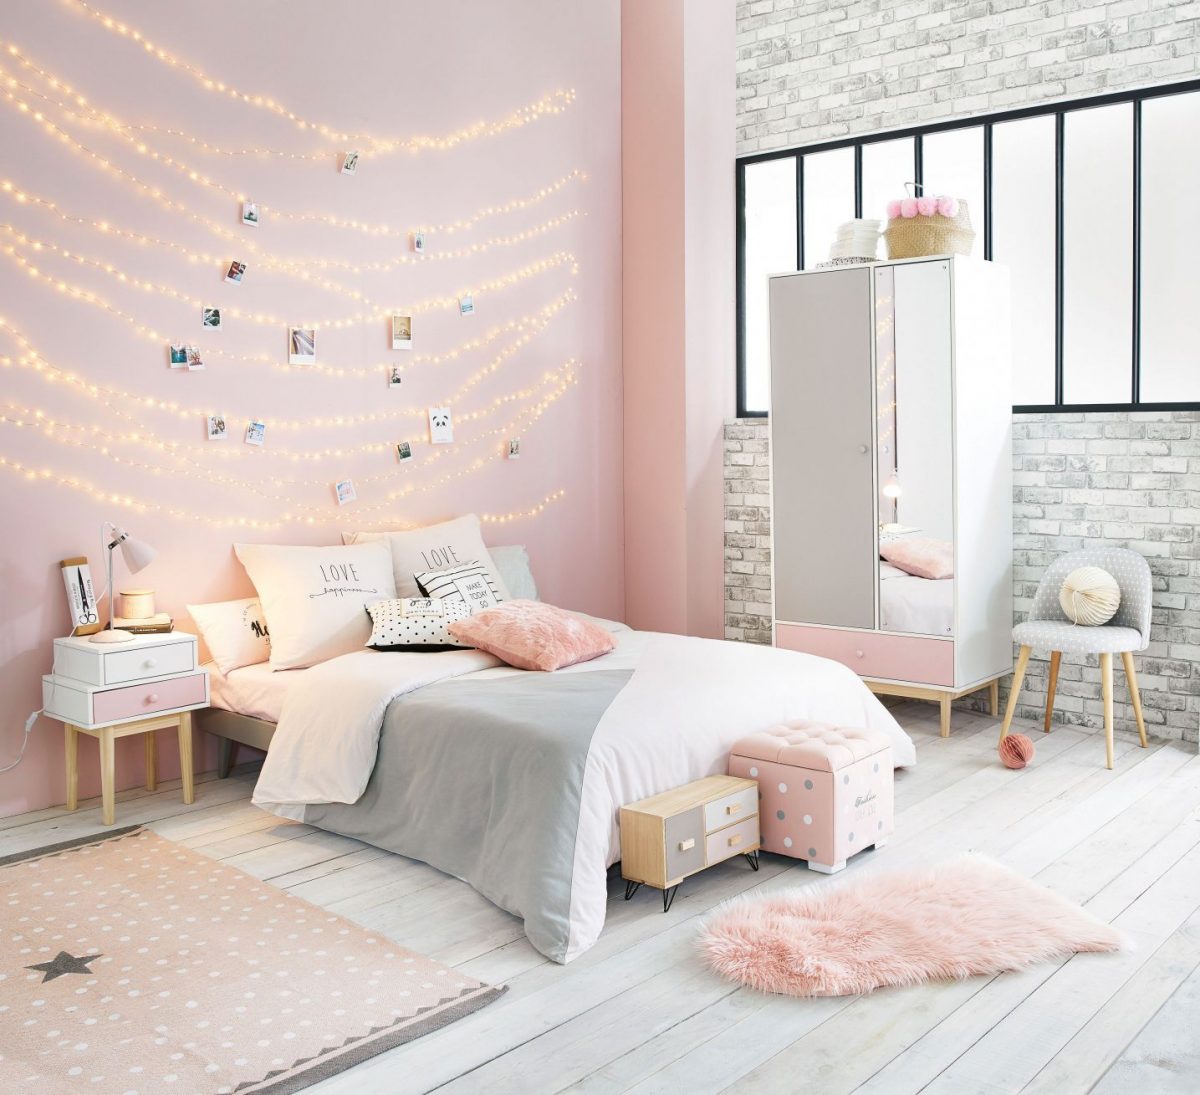 Mẫu phòng ngủ màu hồng - xám - trắng